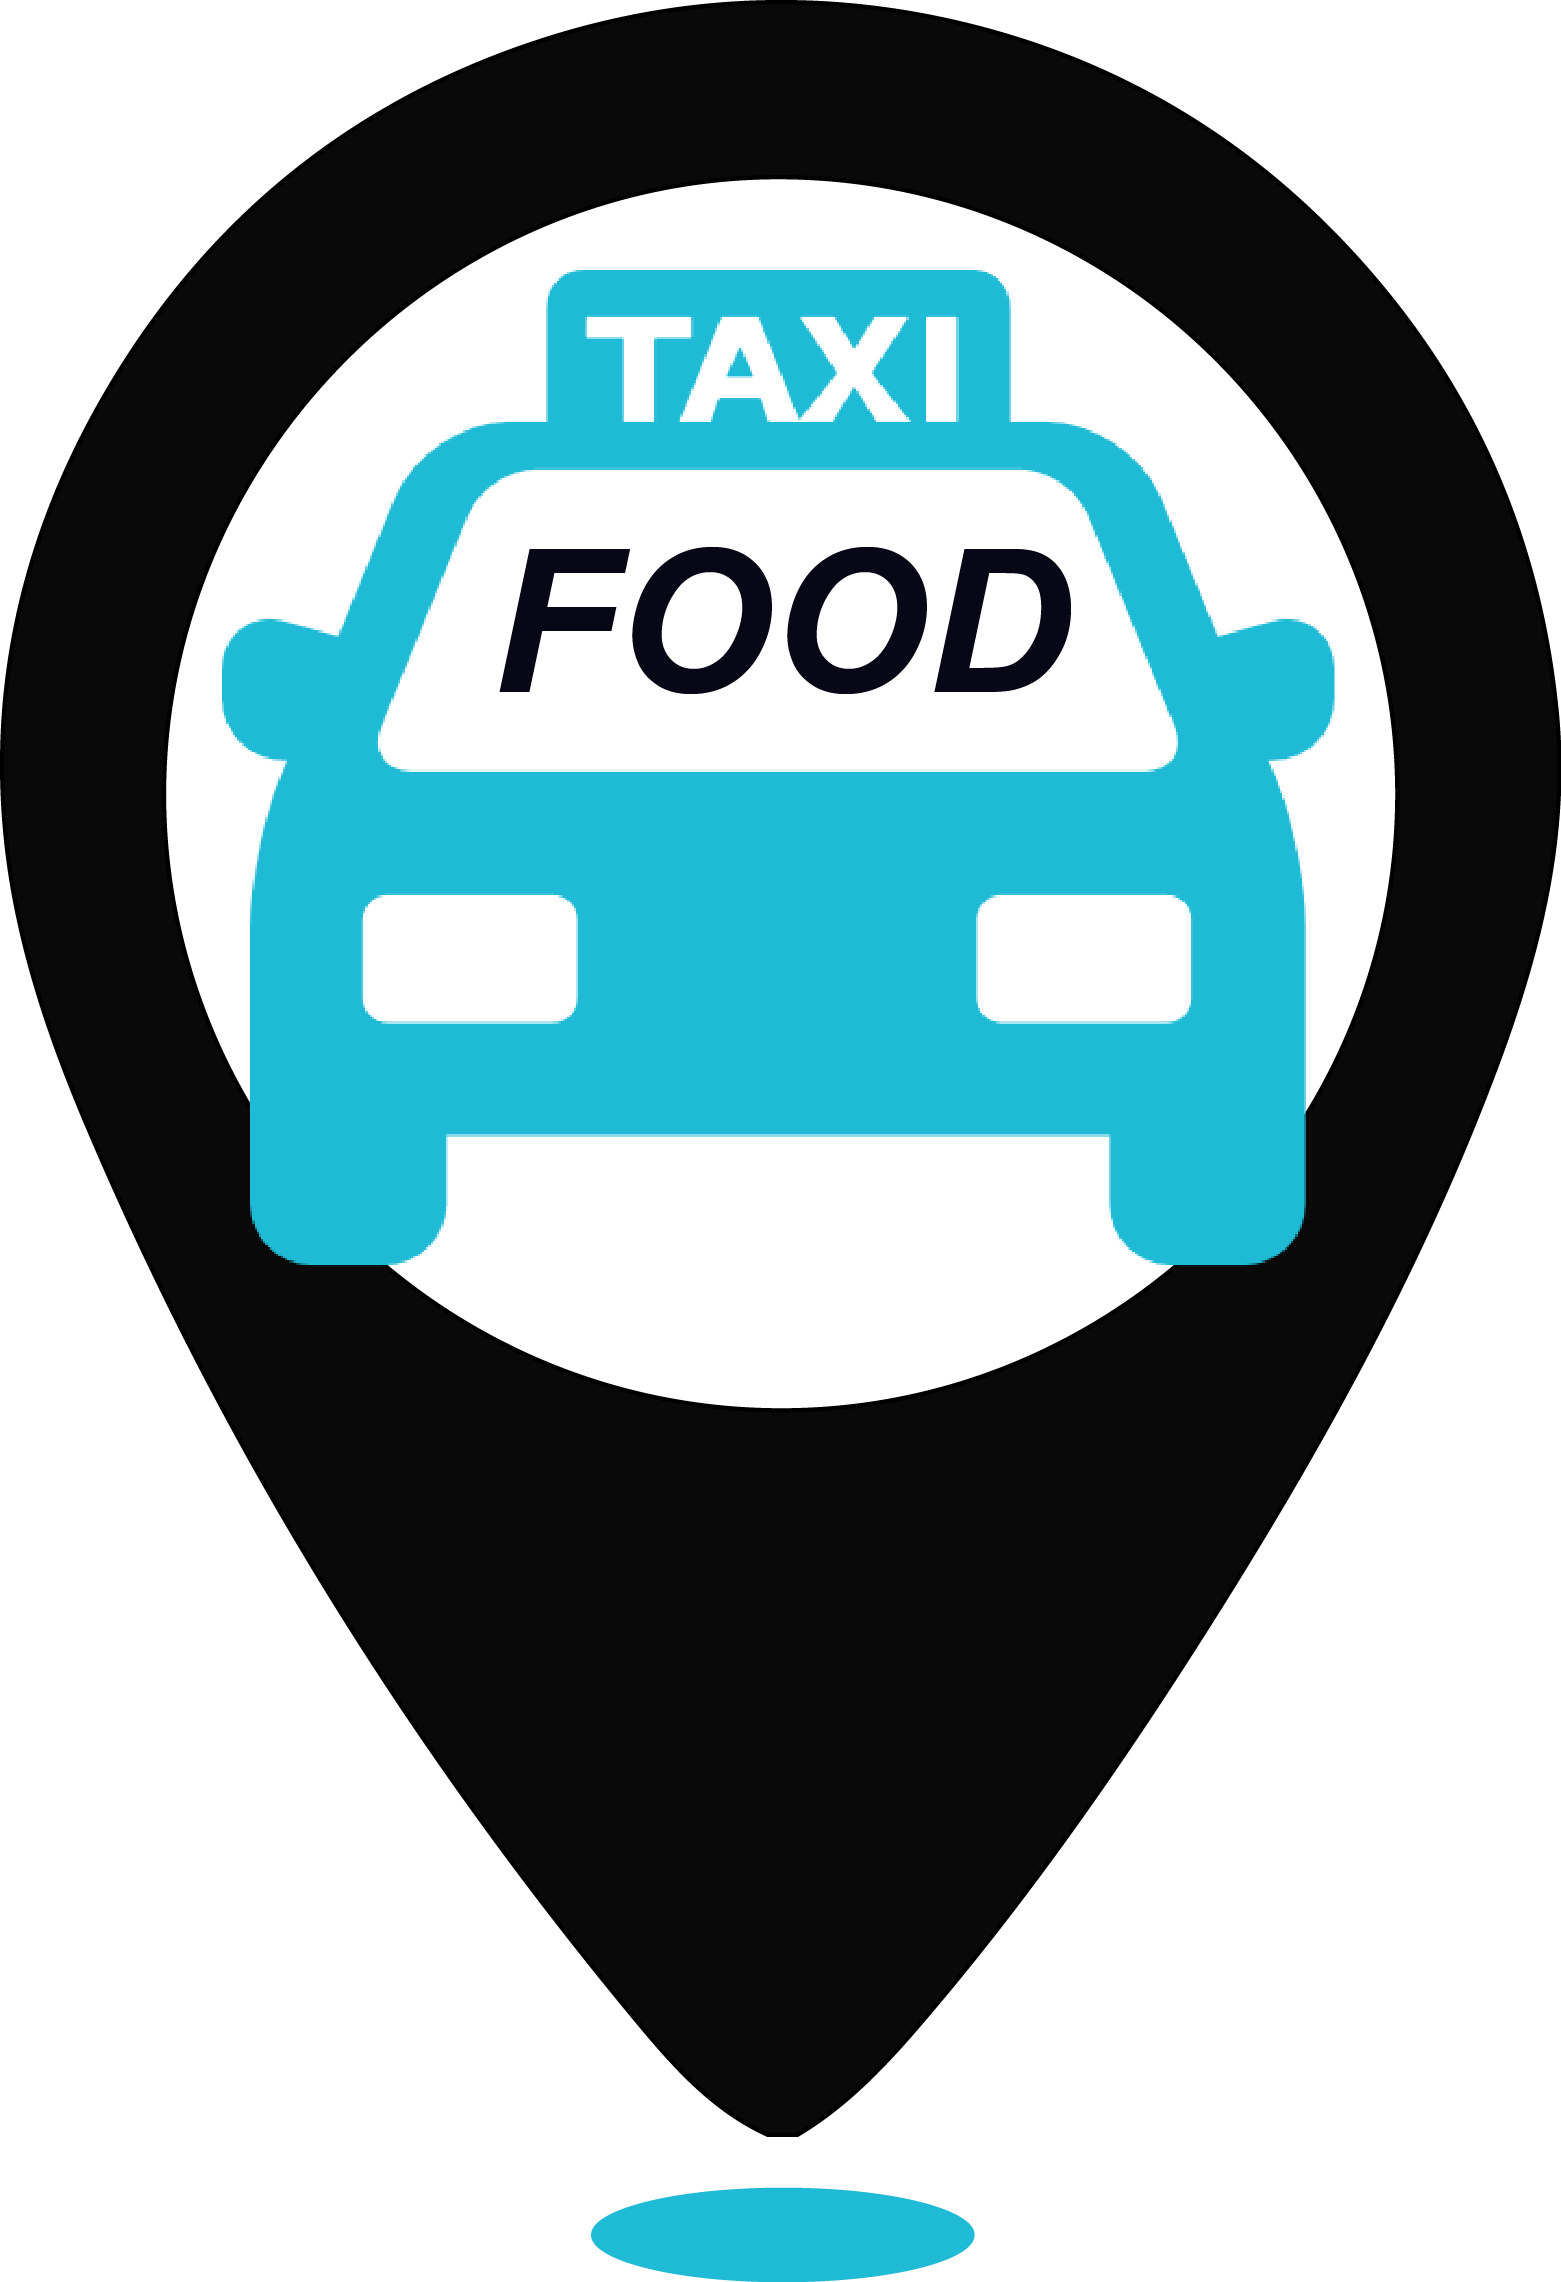 Фуд такси заказ. Логотип такси. Фуд такси. Taxi food логотип. Такси еда СПБ.